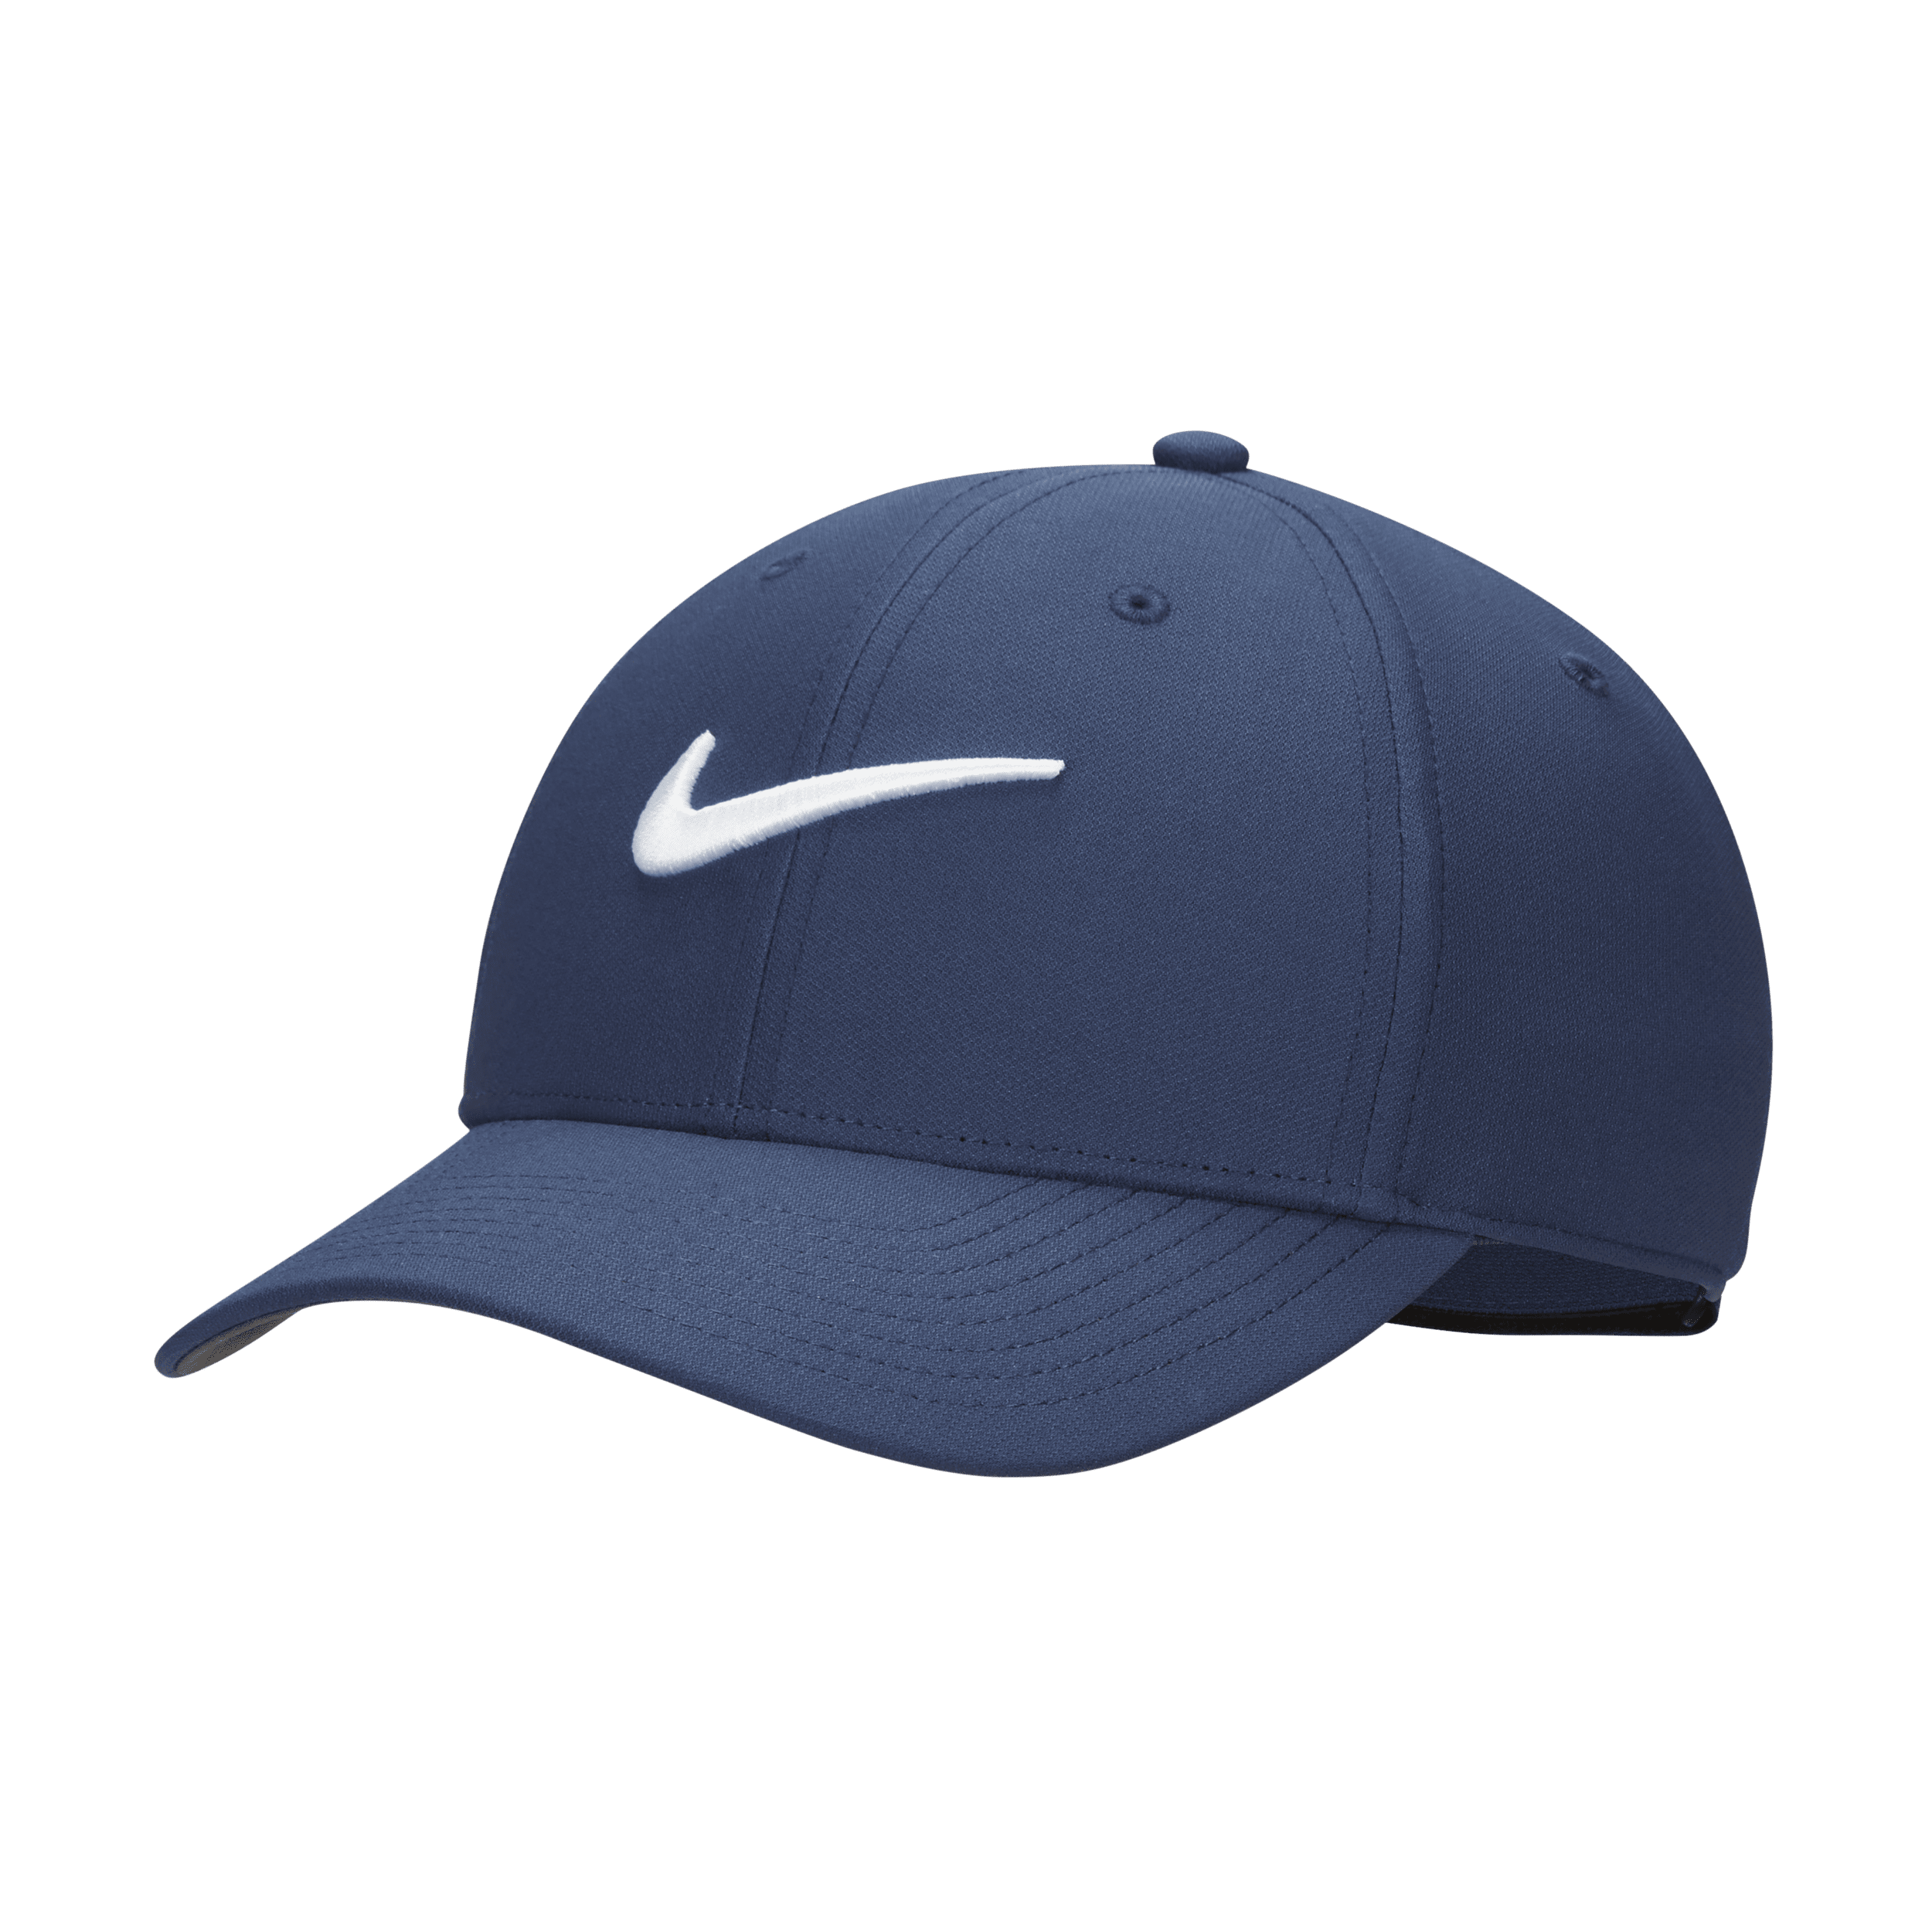 Struktureret Nike Dri-FIT Club Swoosh-kasket - blå